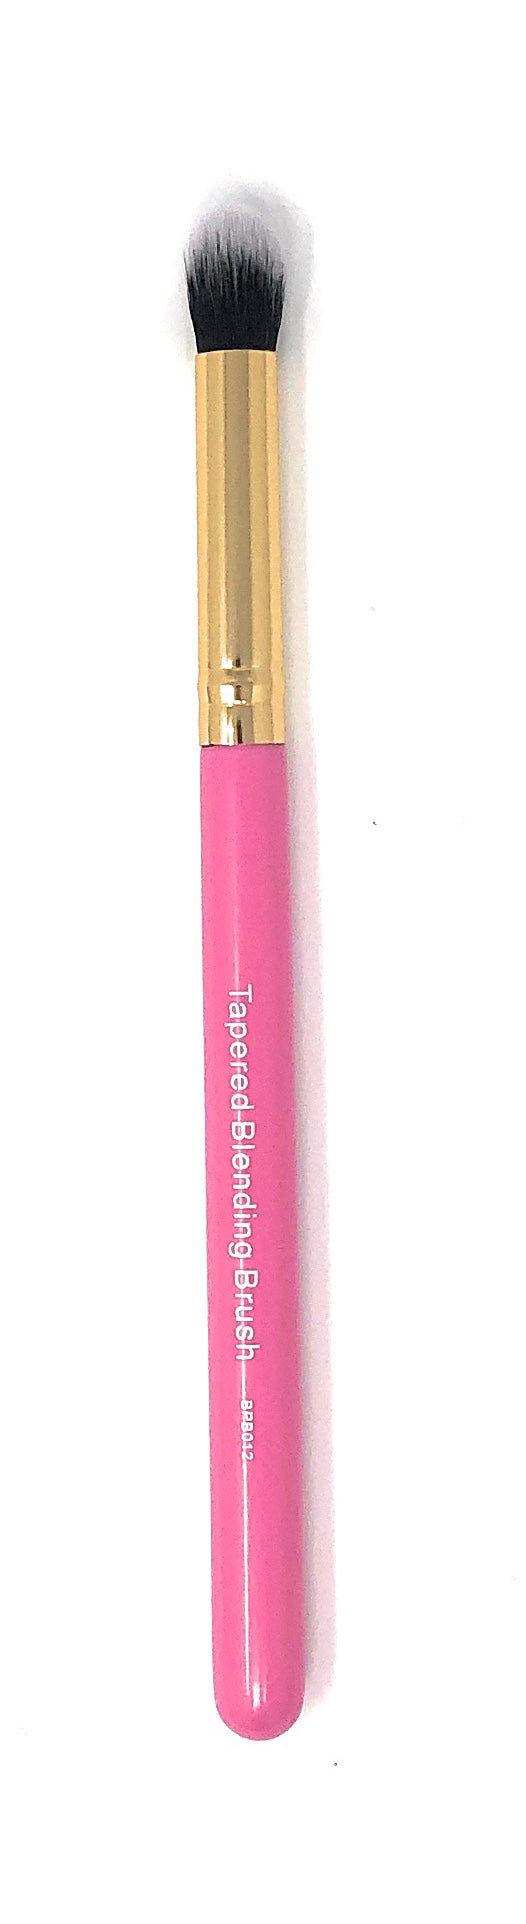 BlackPink Tapered Blending Brush BPB012 - Beauty Bar & Supply